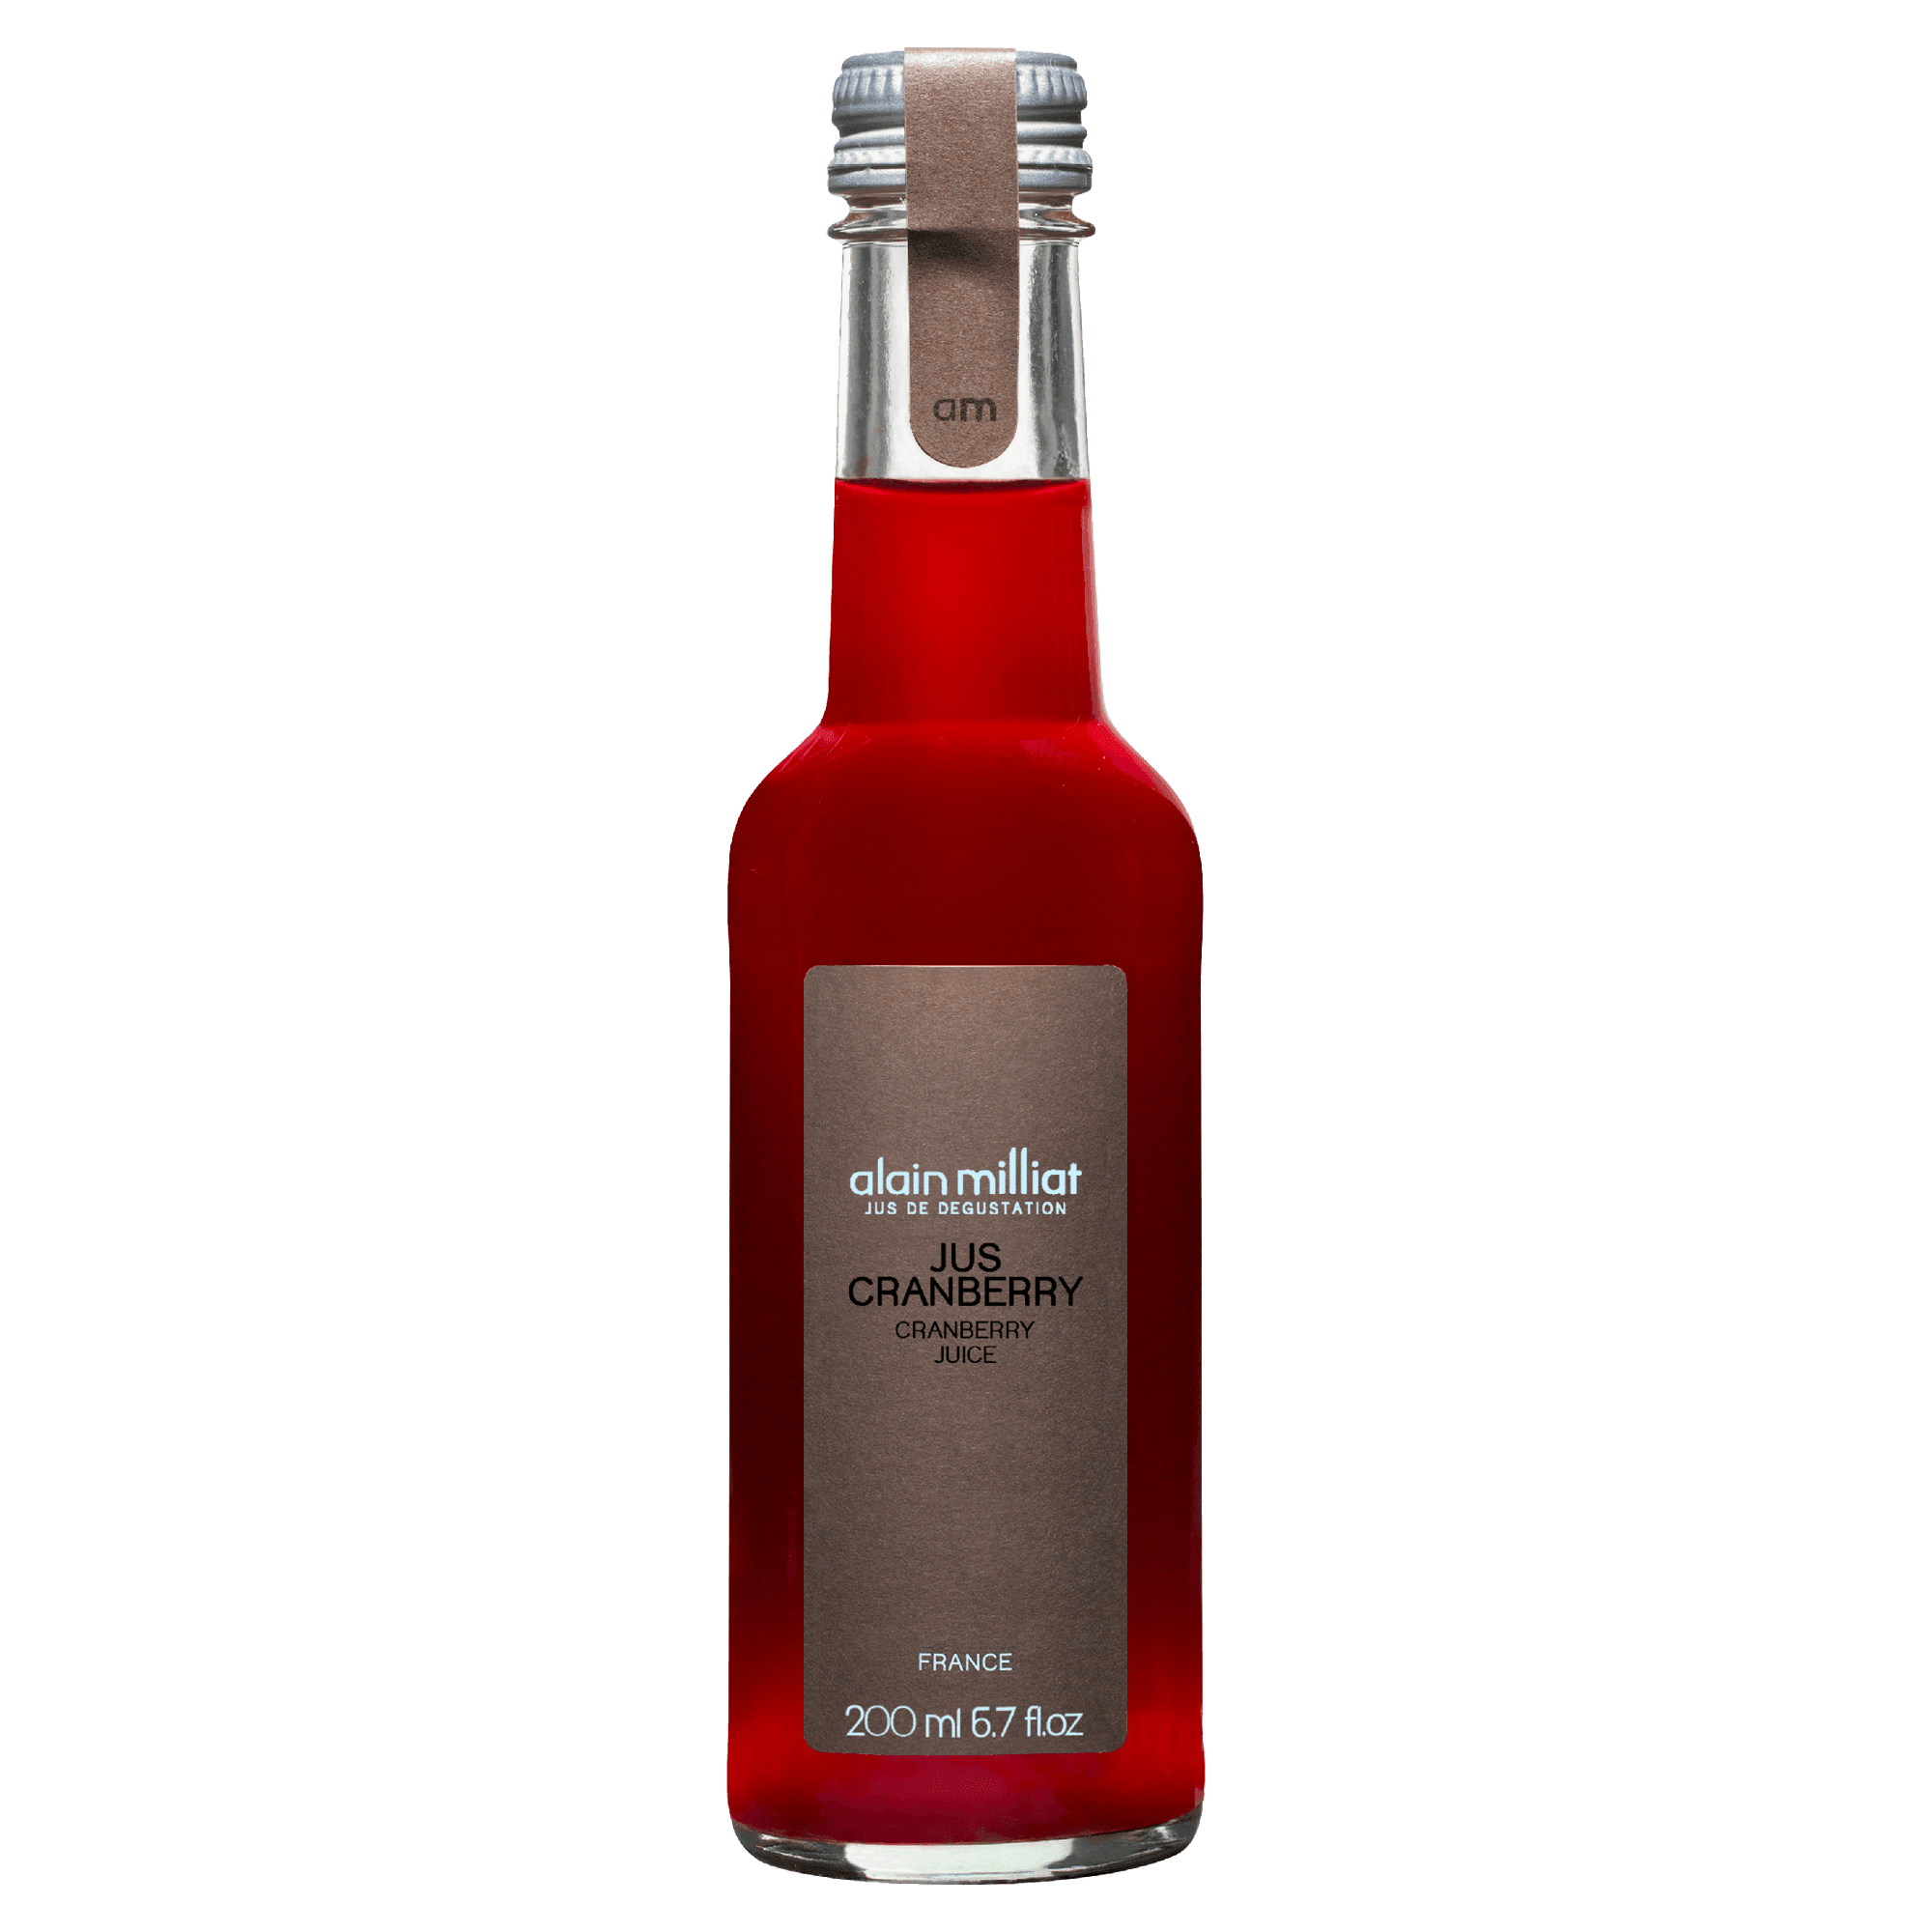 Cranberry Juice - Savory Gourmet